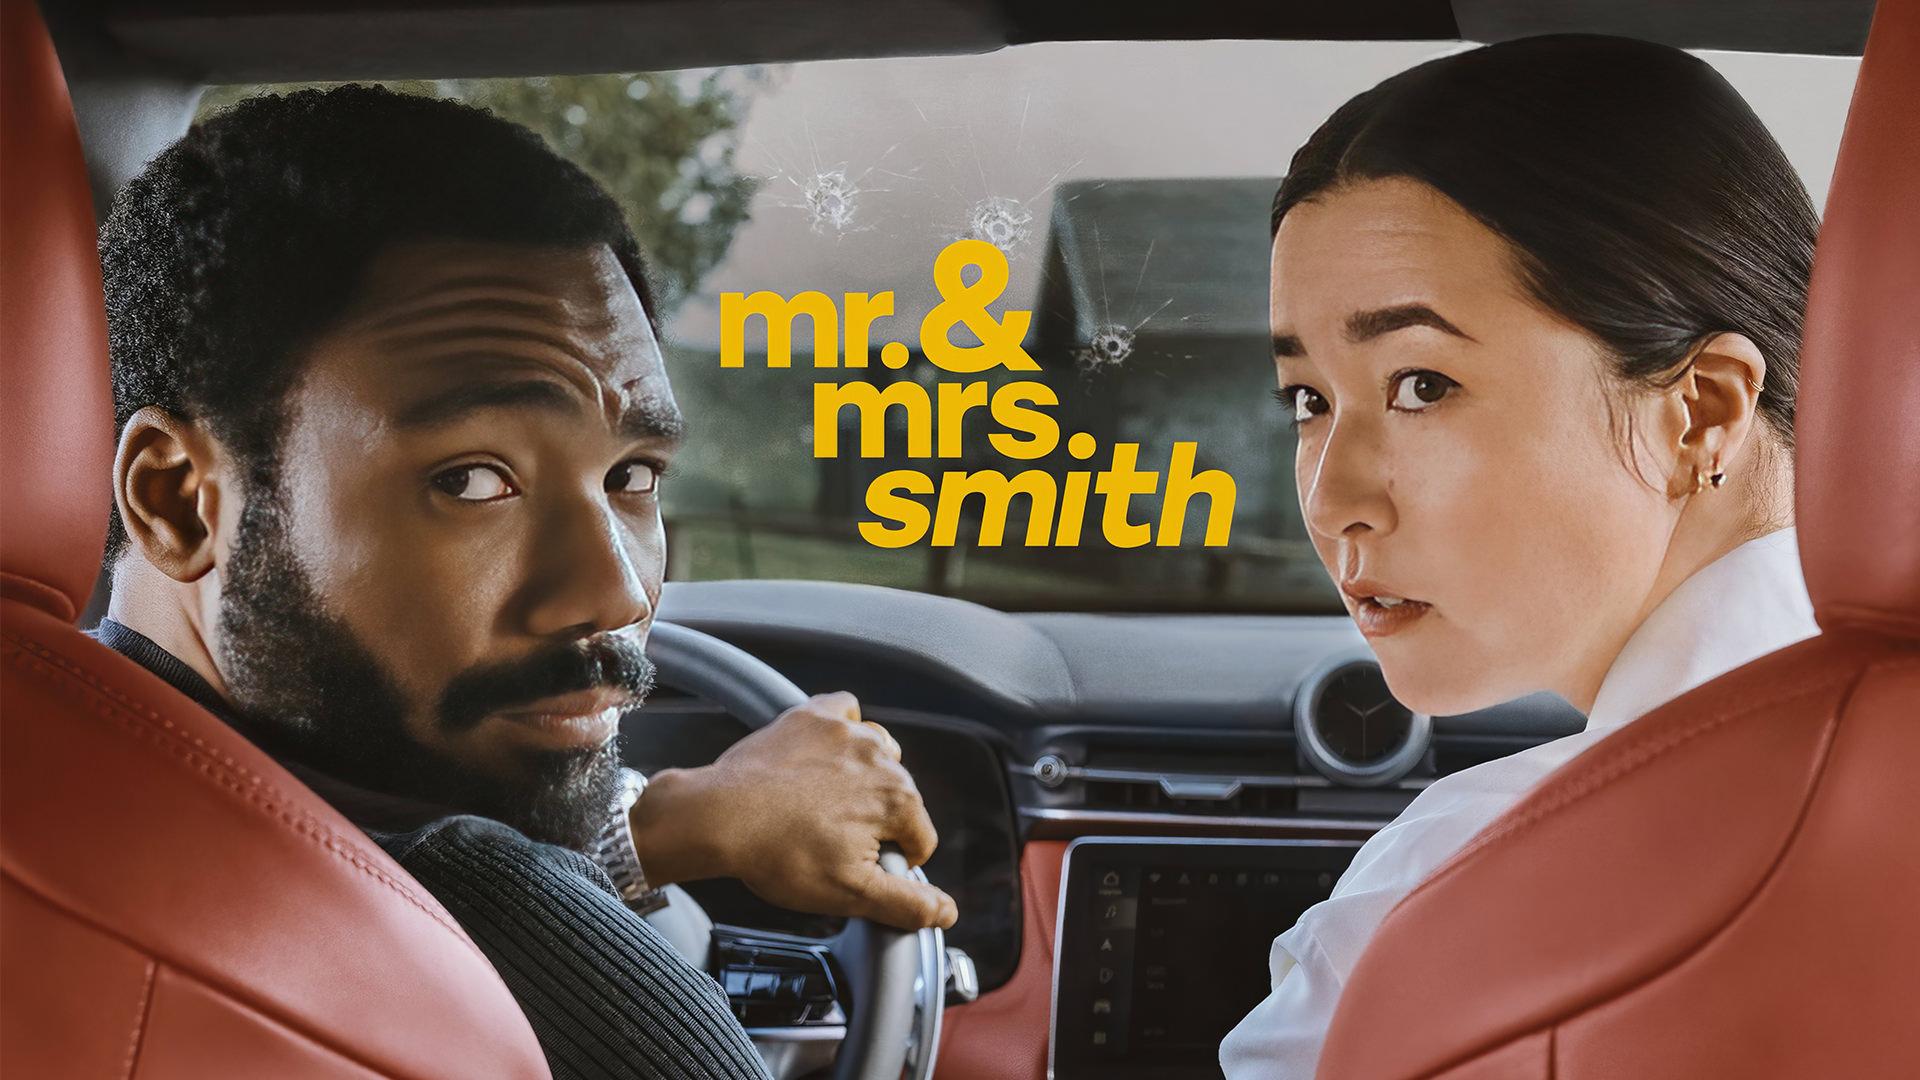 ویدیو سریال آقا و خانم اسمیت تفاوت این نمایش با فیلم اصلی را نشان می